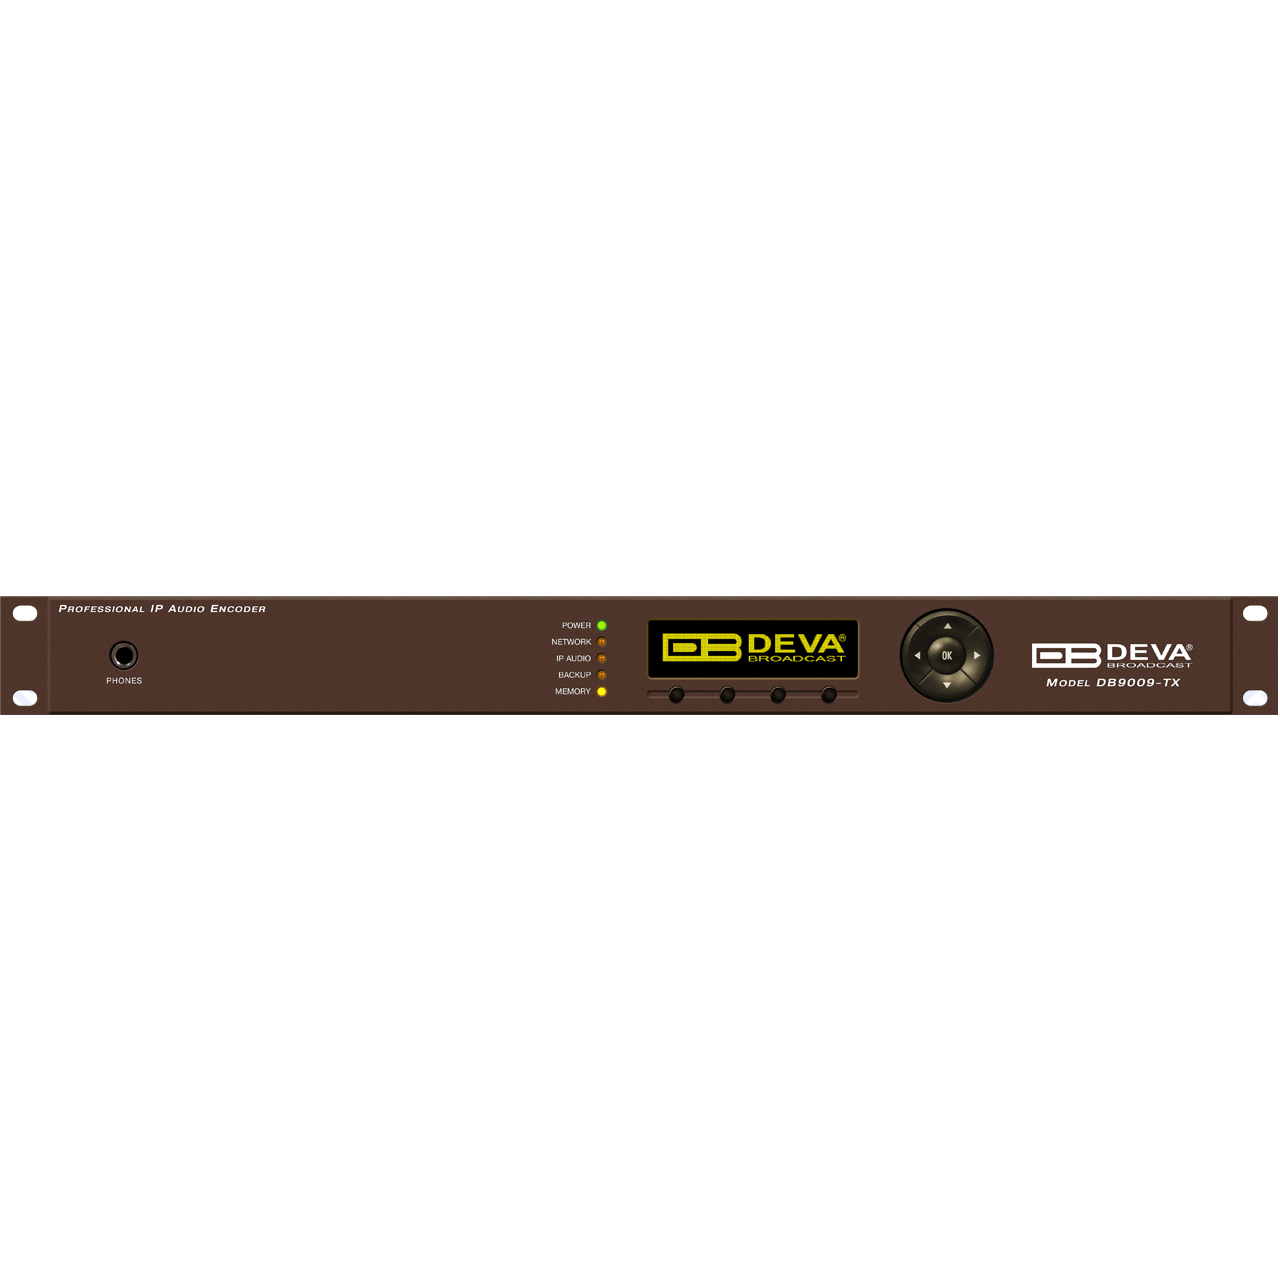 Контроллеры DEVA Broadcast DB9009-TX флягодержатель tacx deva желт t6154 18 b